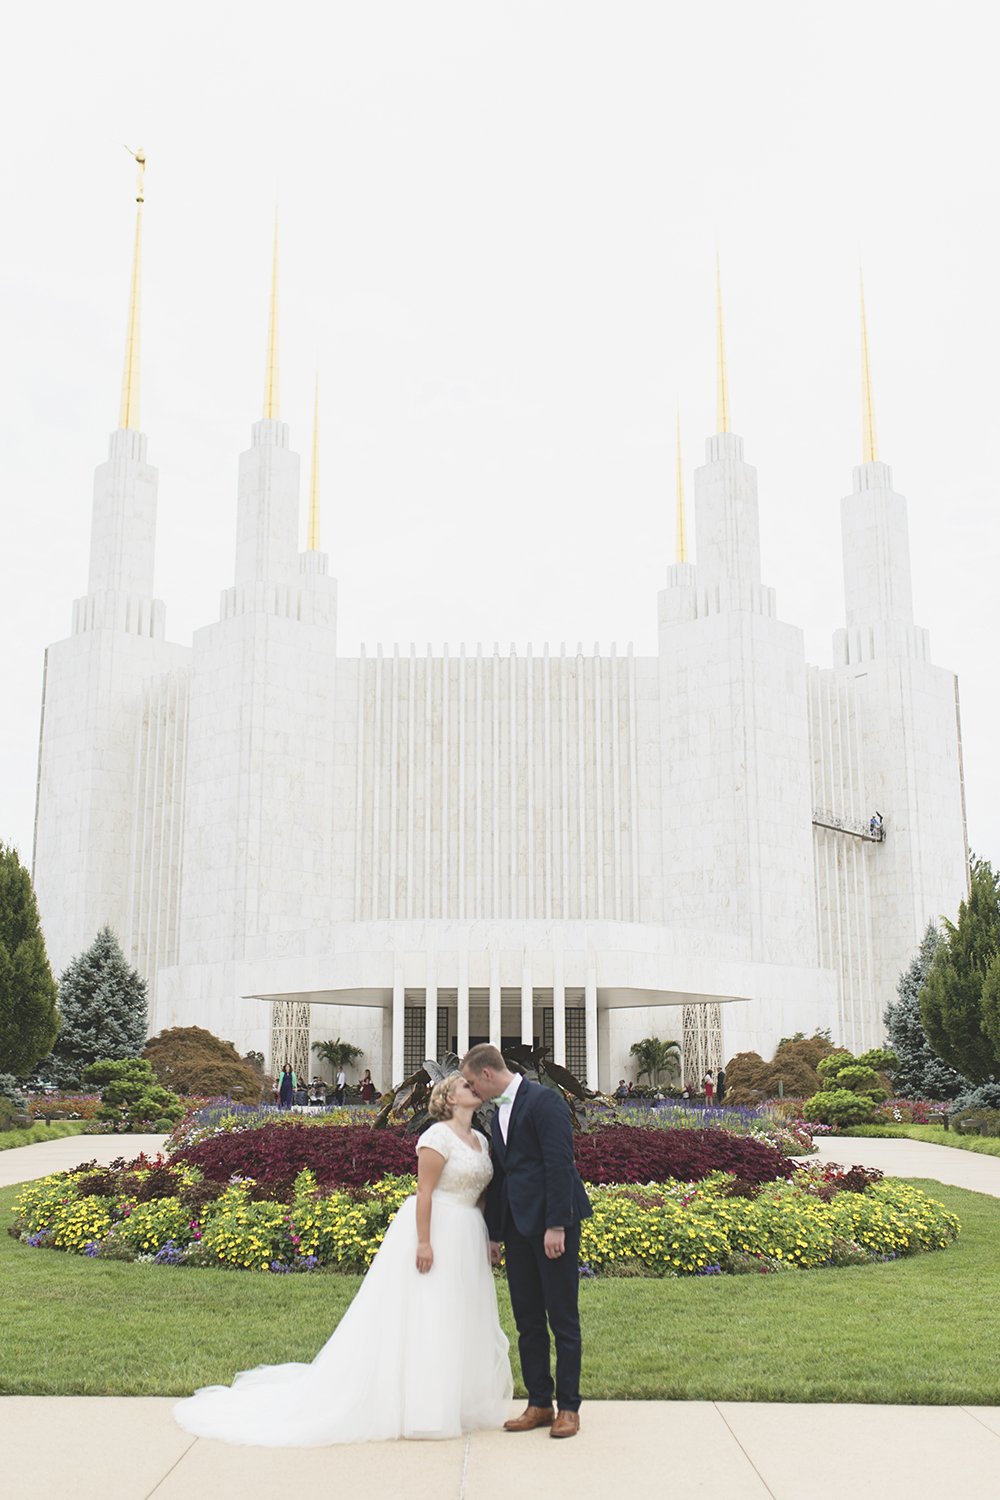 7 1/2 Tips to Photograph a Mormon Wedding Washington DC LDS Temple